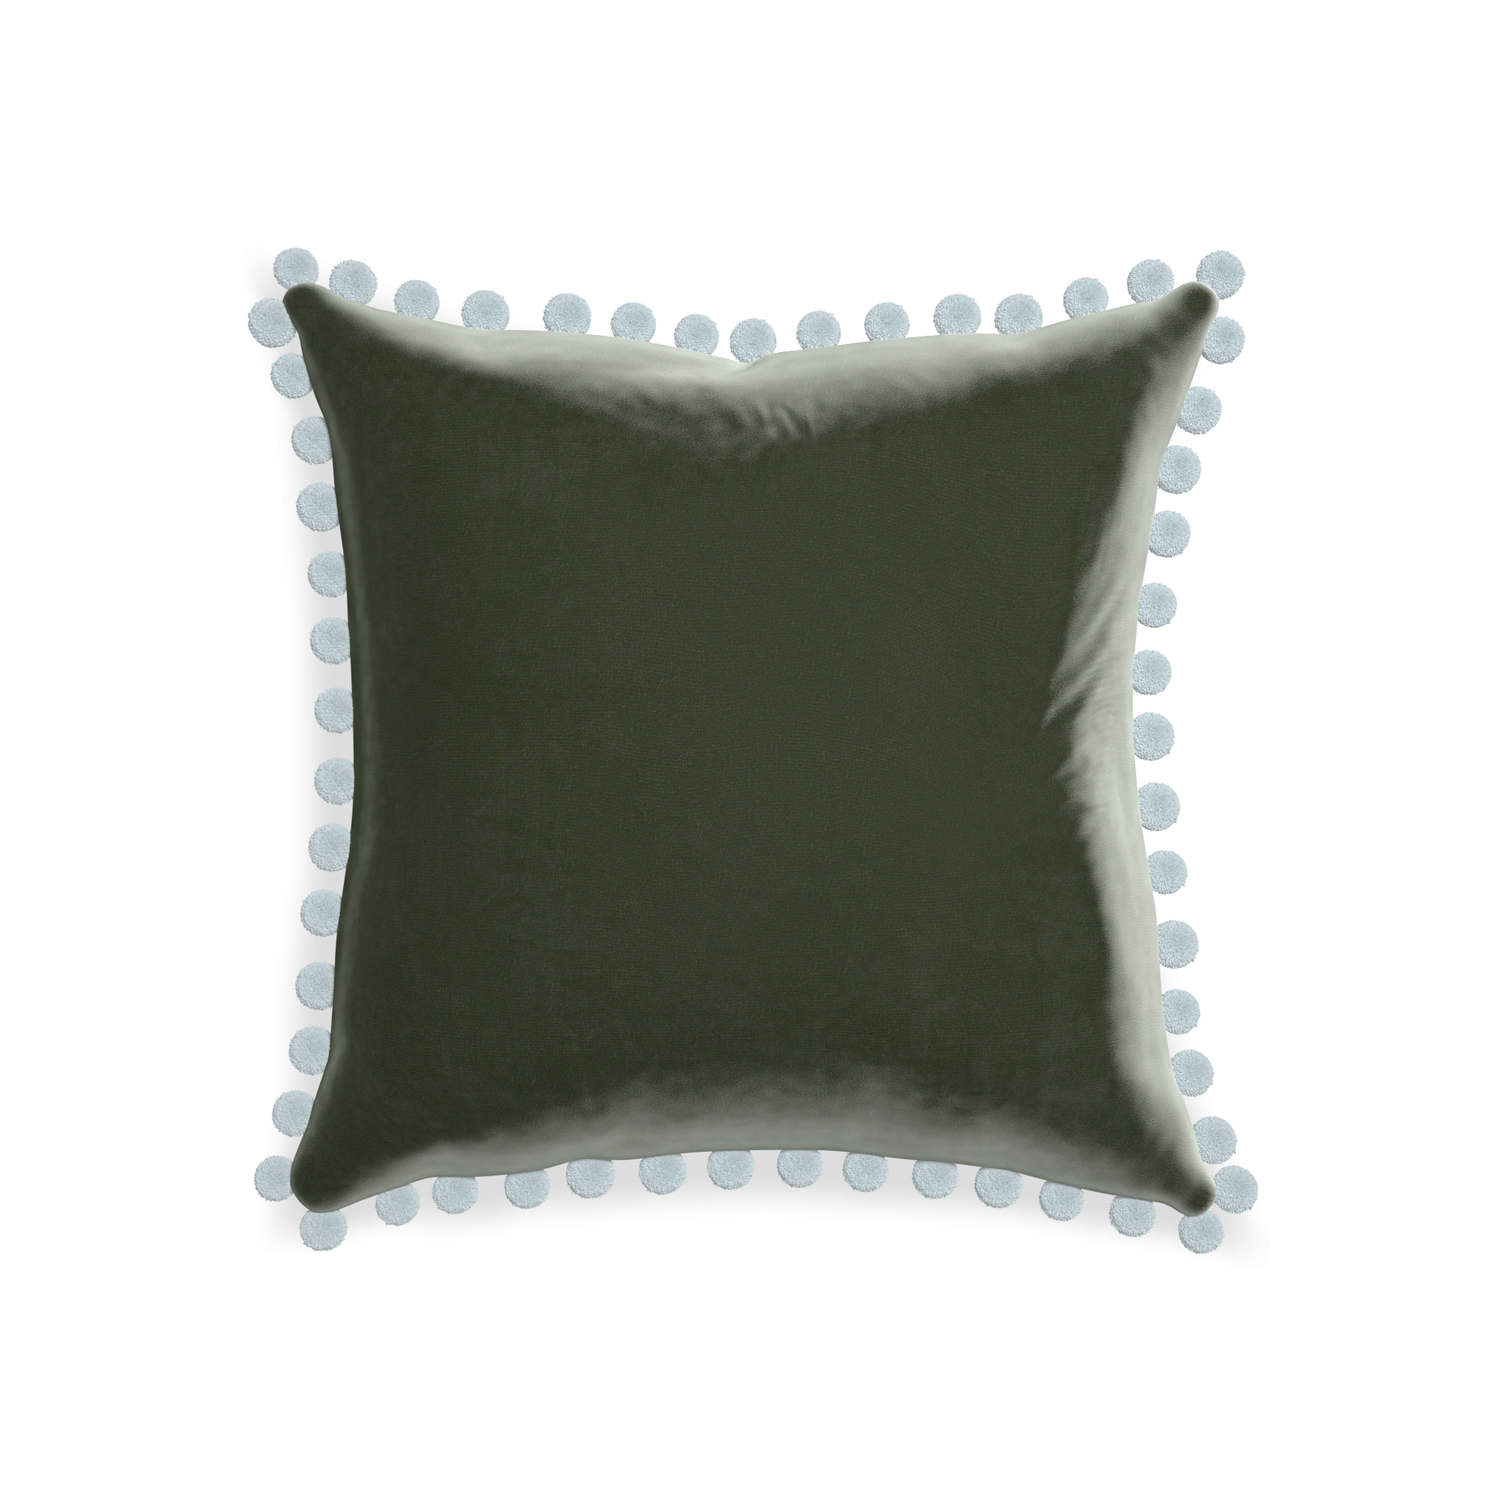 20-square fern velvet custom pillow with powder pom pom on white background